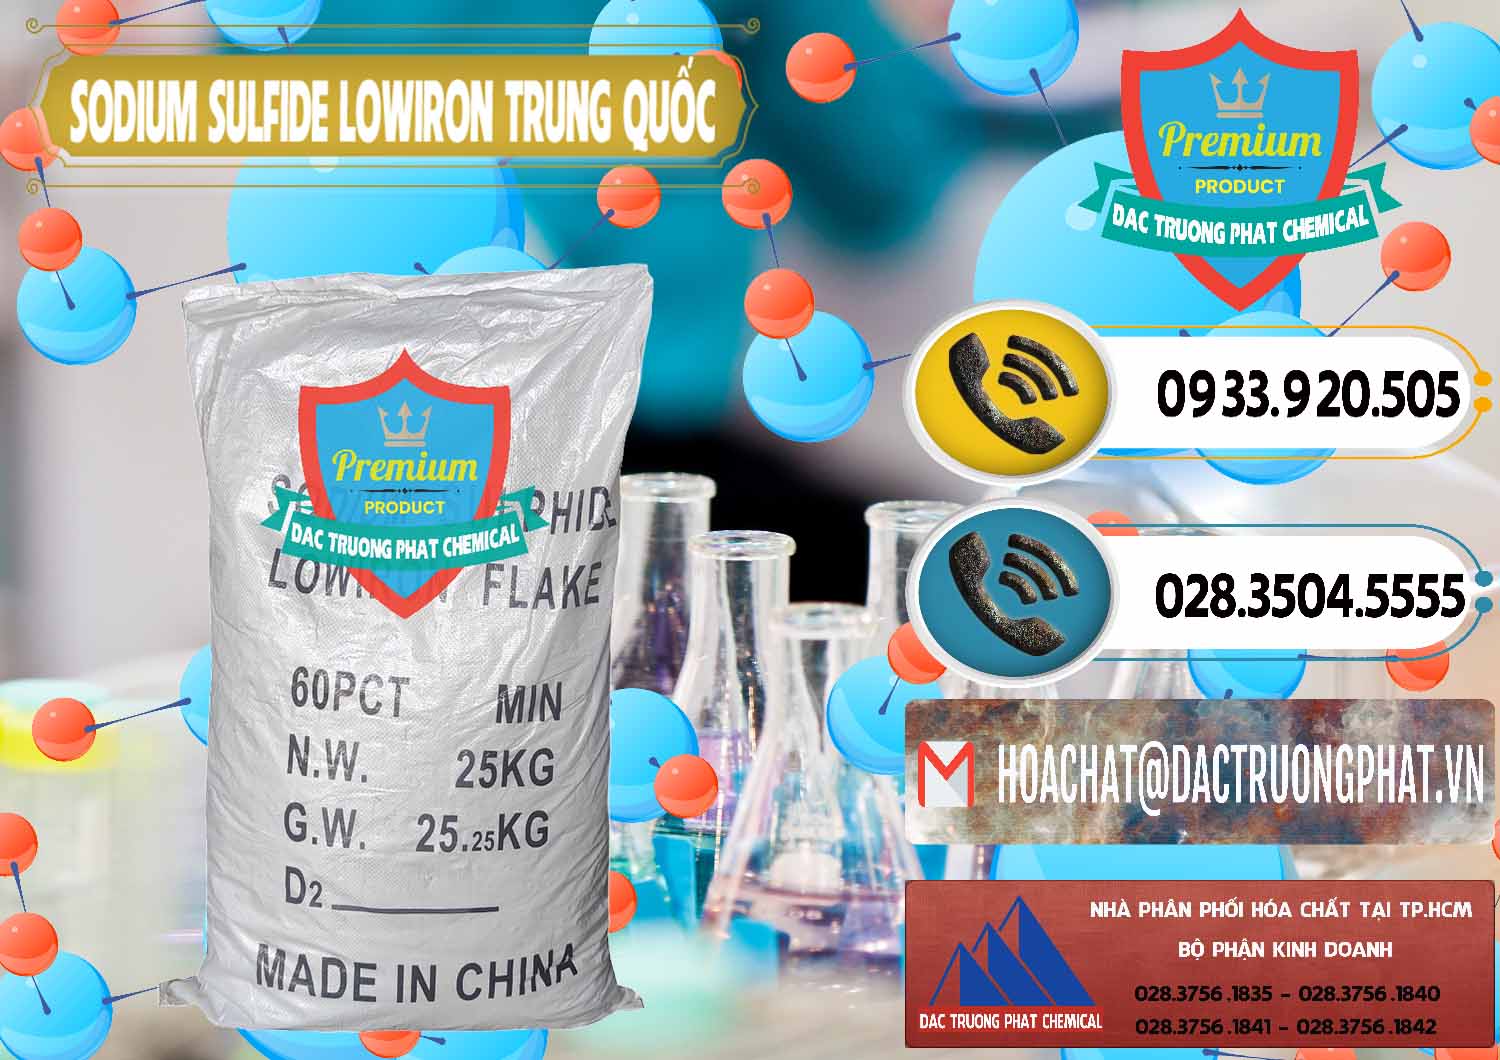 Nơi chuyên cung cấp & bán Sodium Sulfide NA2S – Đá Thối Lowiron Trung Quốc China - 0227 - Cty phân phối và cung cấp hóa chất tại TP.HCM - hoachatdetnhuom.vn